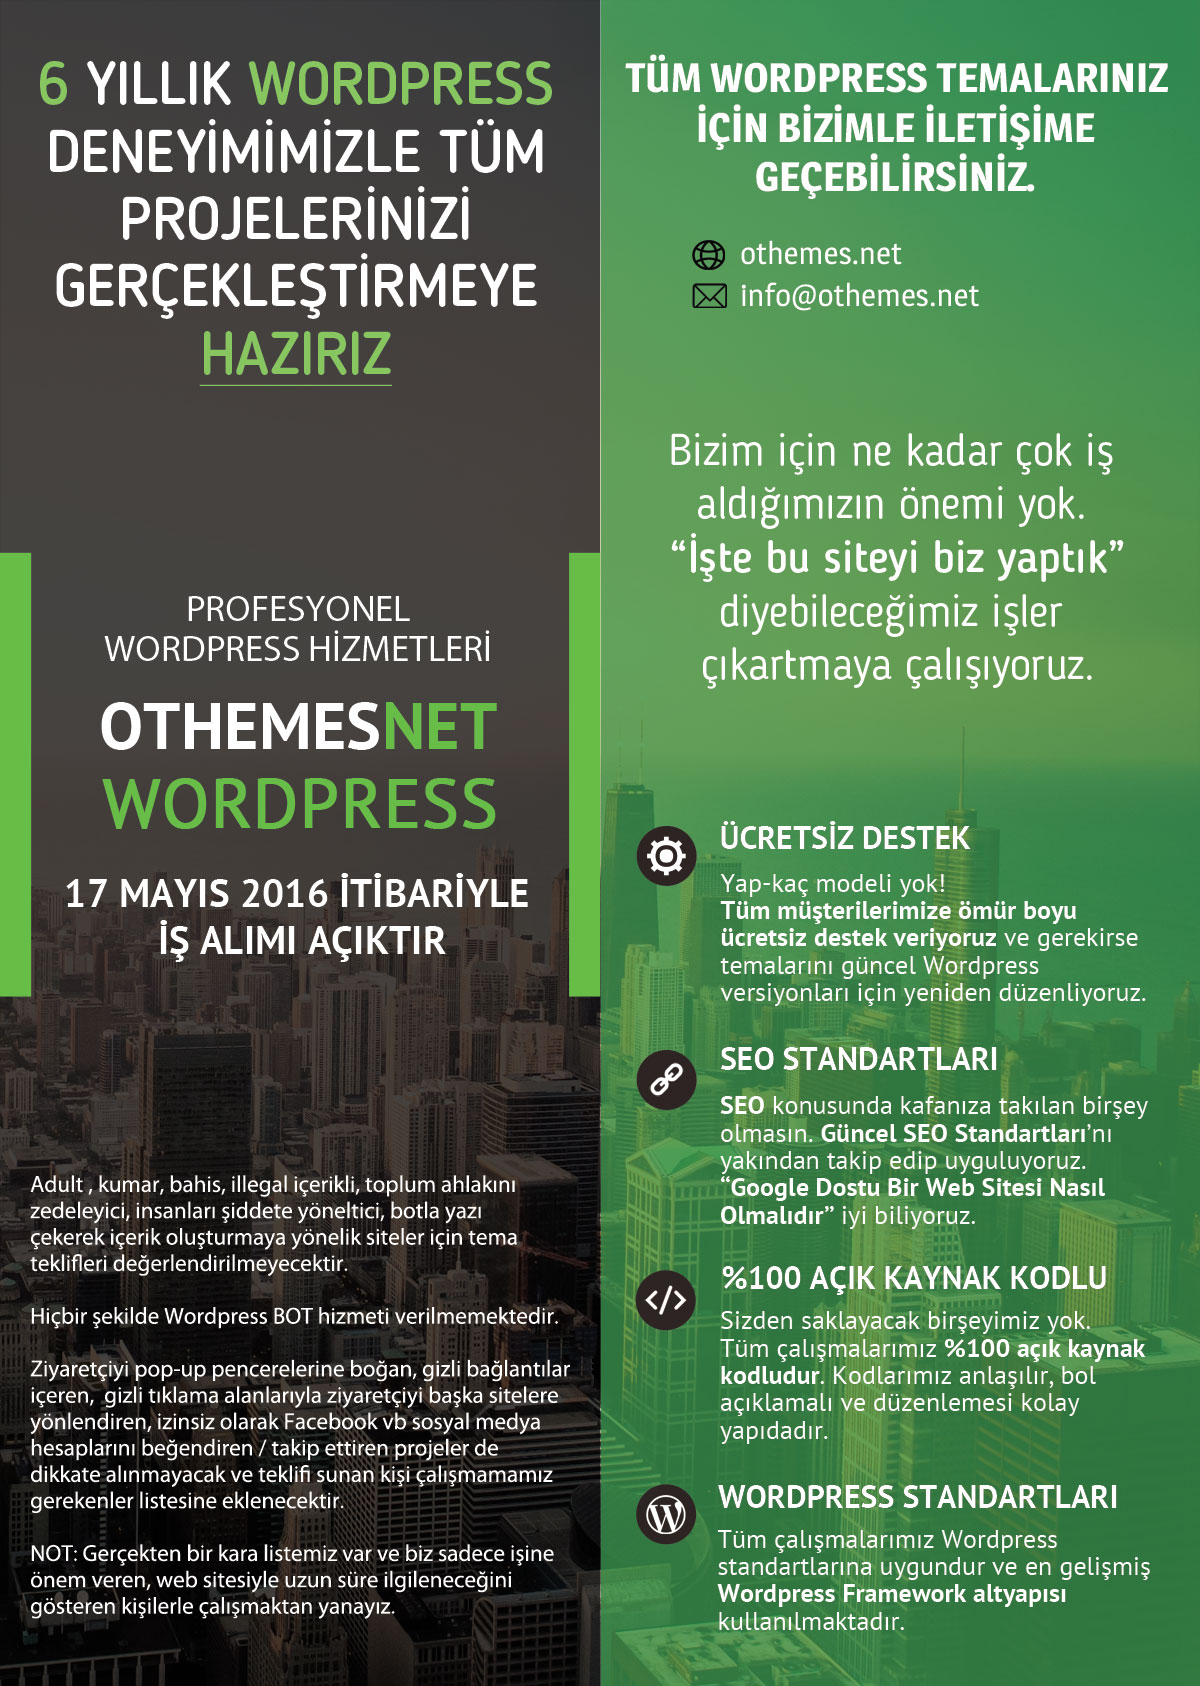  Wordpress Temalarınız Hazırlanır | Responsive | Schema.org | Tarayıcı Bildirimleri